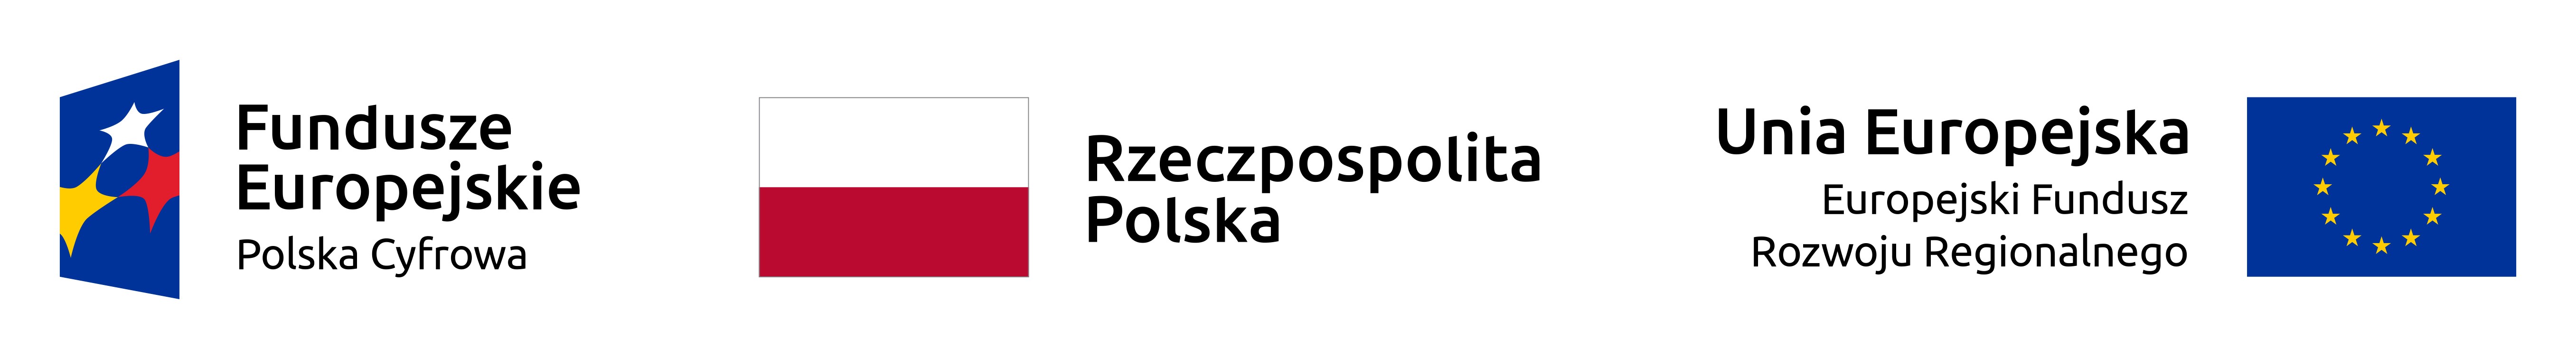 logotypy Fundusze Europejskie Polska Cyfrowa, Rzeczpospolita Polska, Unia Europejka Europejski Fundusz Rozwoju Regionalnego